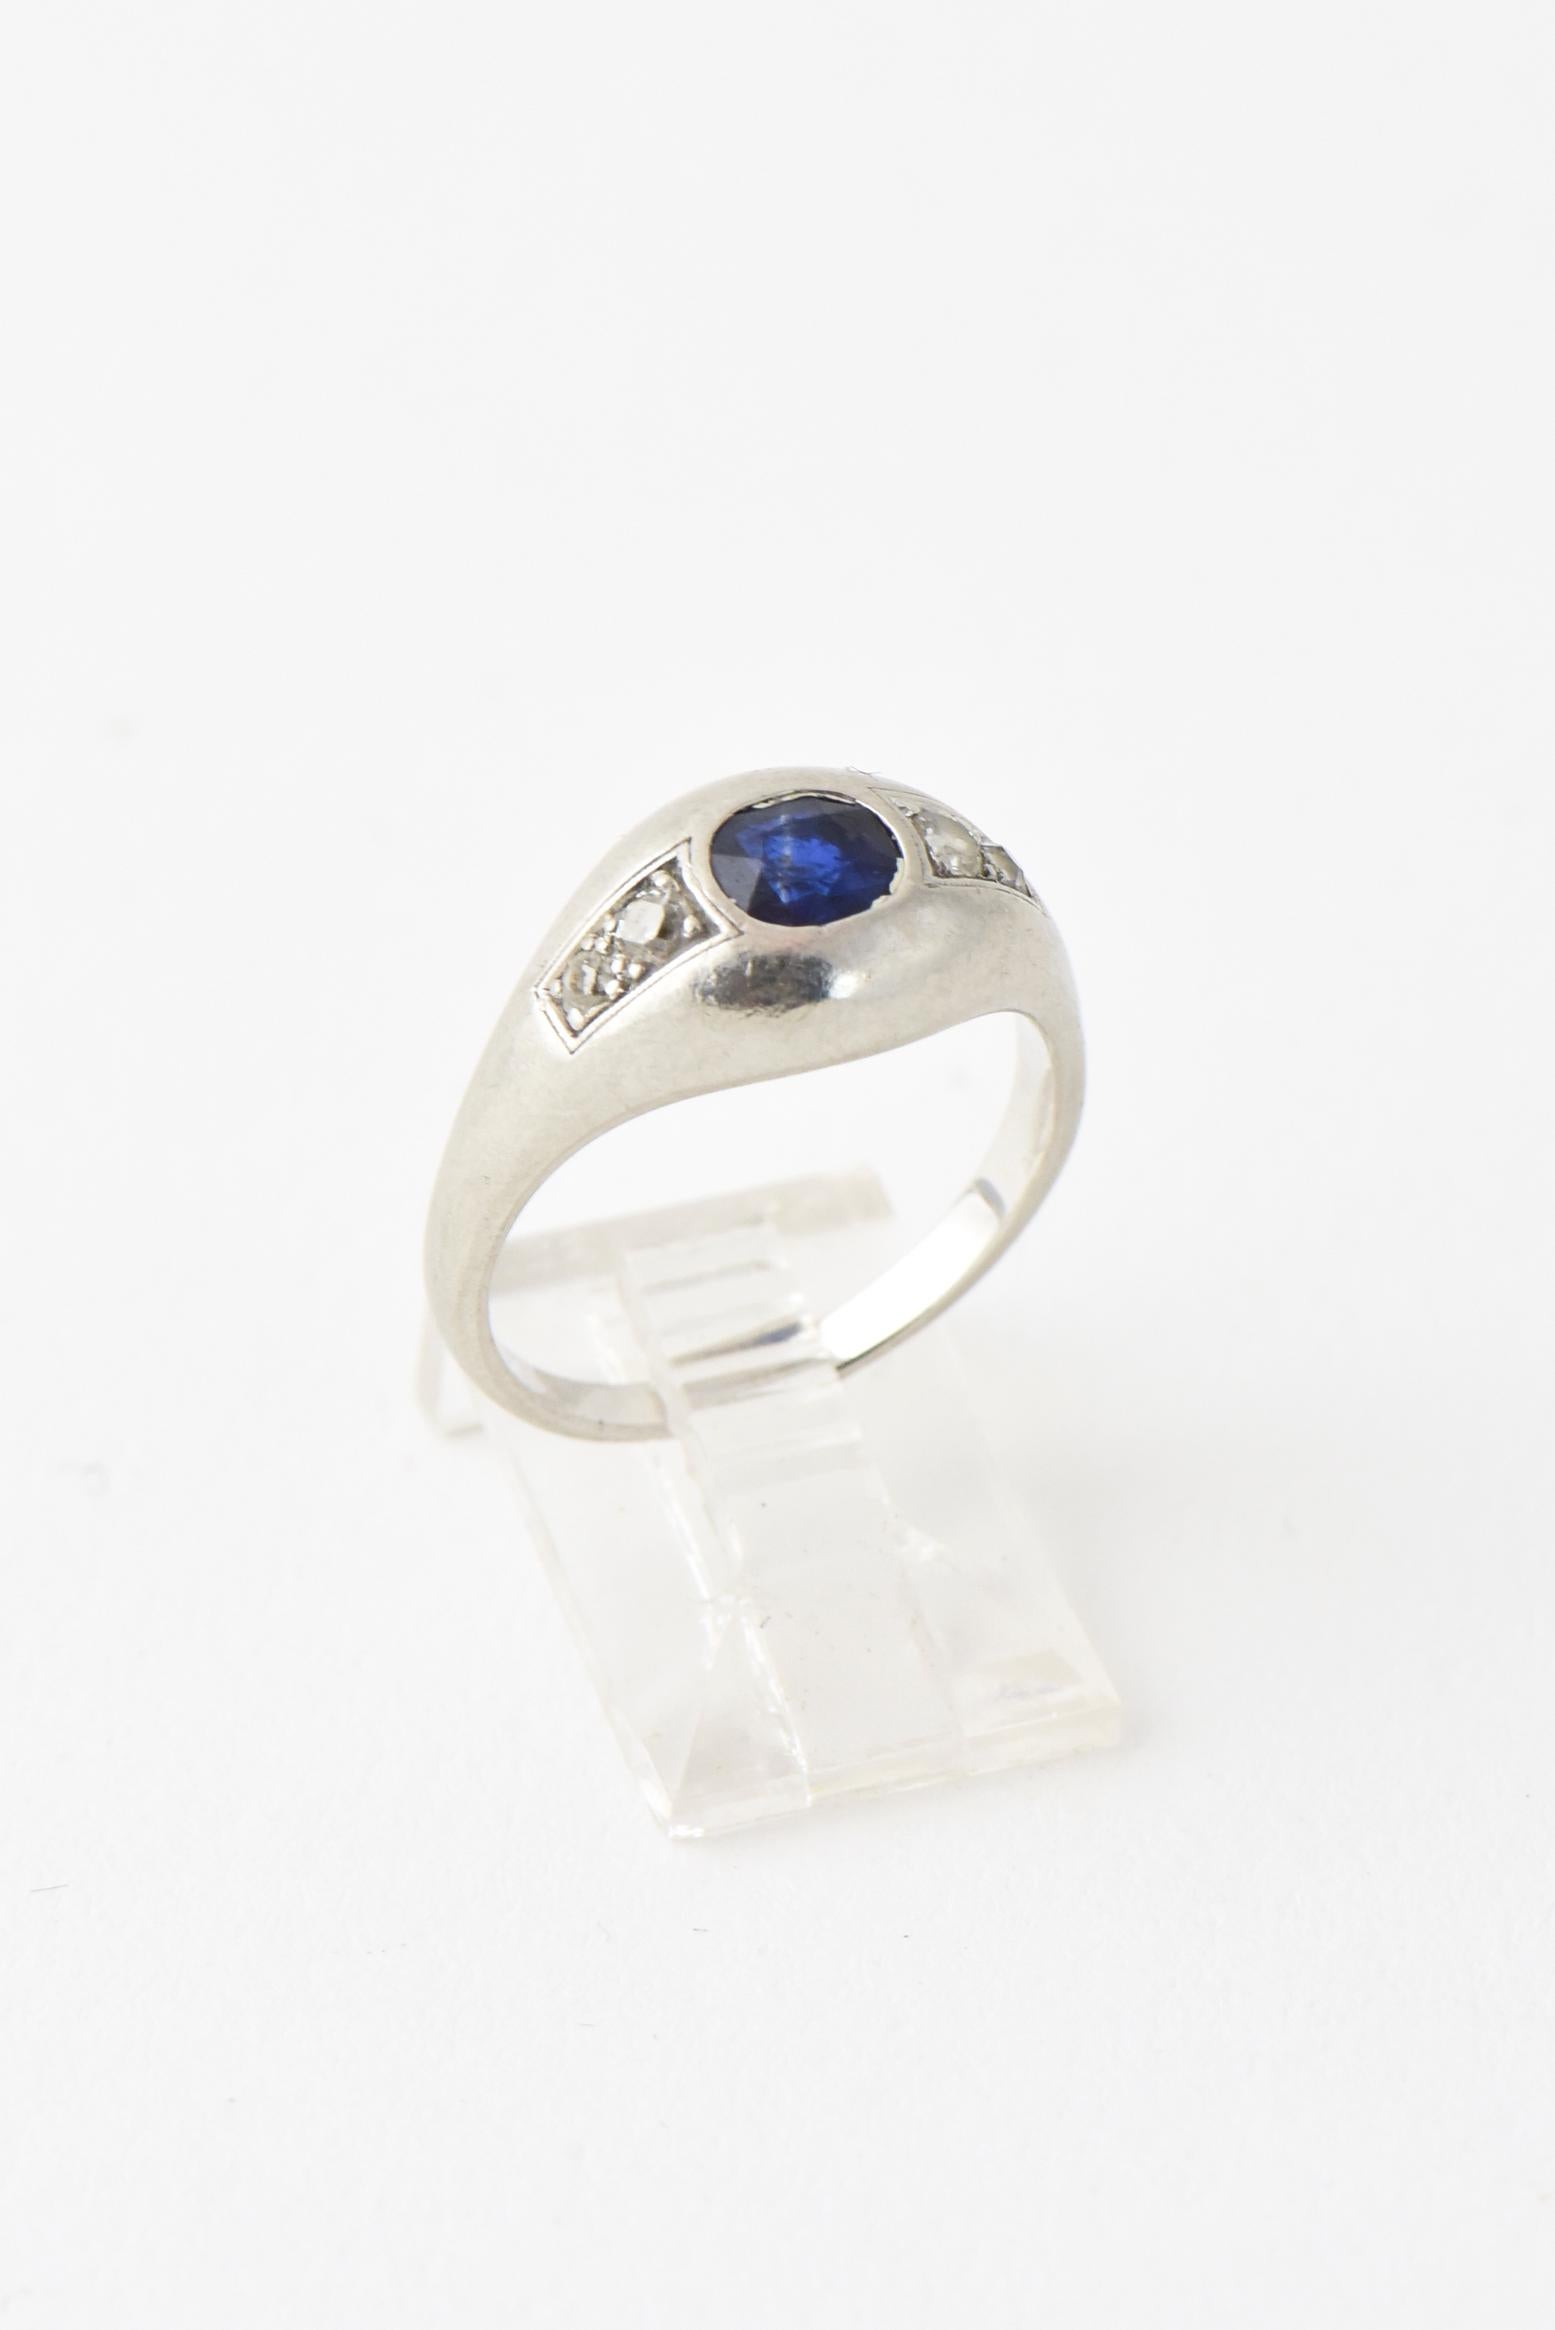 Art-Deco-Ring aus Platin mit einem ovalen Saphir, der auf jeder Seite mit zwei Diamanten besetzt ist. US Größe 7.25; kann angepasst werden. Säuretests Platin, unmarkiert. Das ungefähre Gewicht der Steine beträgt 0,50 Karat für den Saphir und 0,16